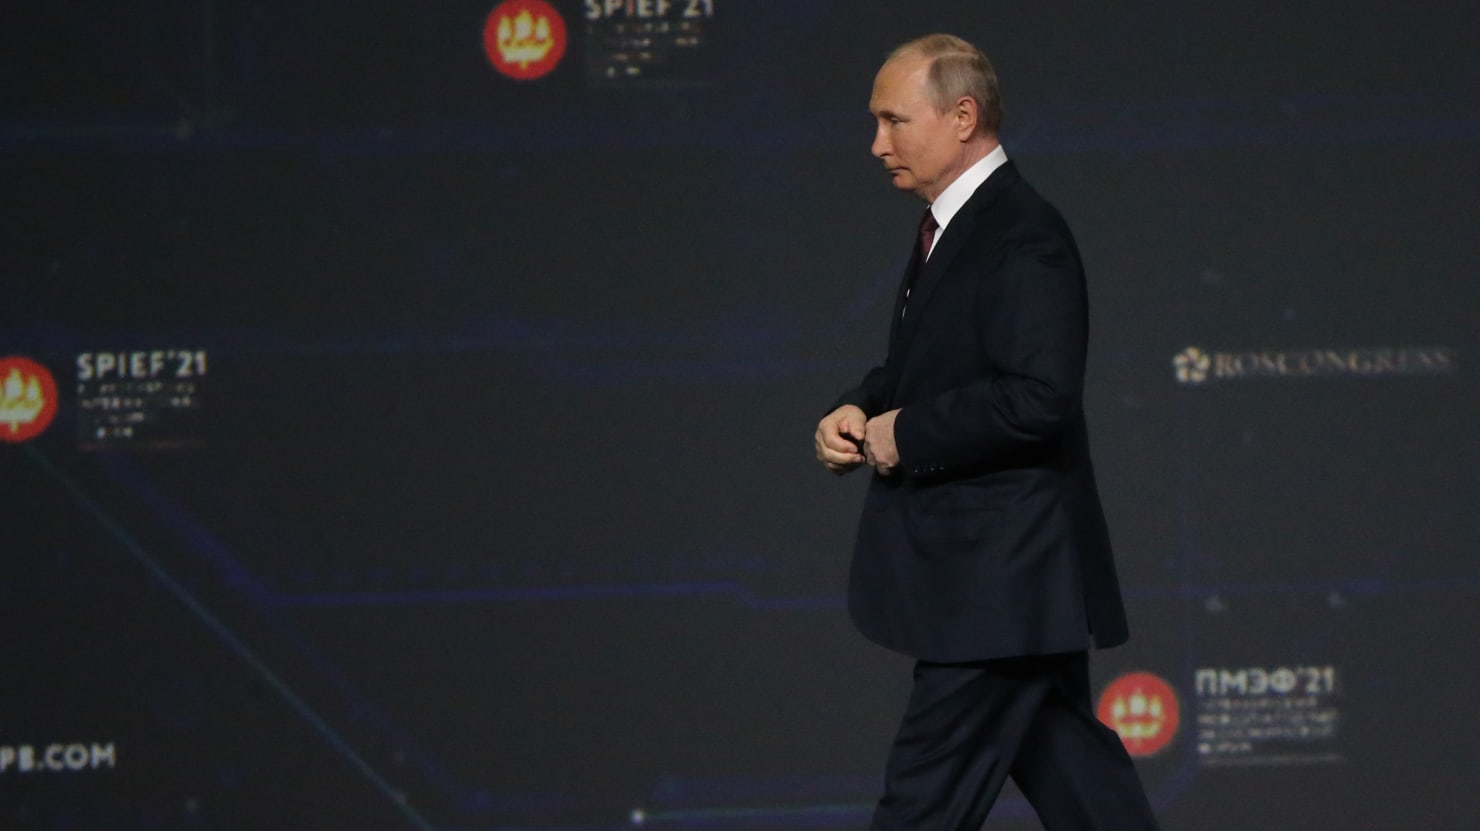 إن منتدى دافوس الاقتصادي الروسي الذي يقوده فلاديمير بوتين في سان بطرسبرج هو بالفعل فوضى كبيرة ومأساوية